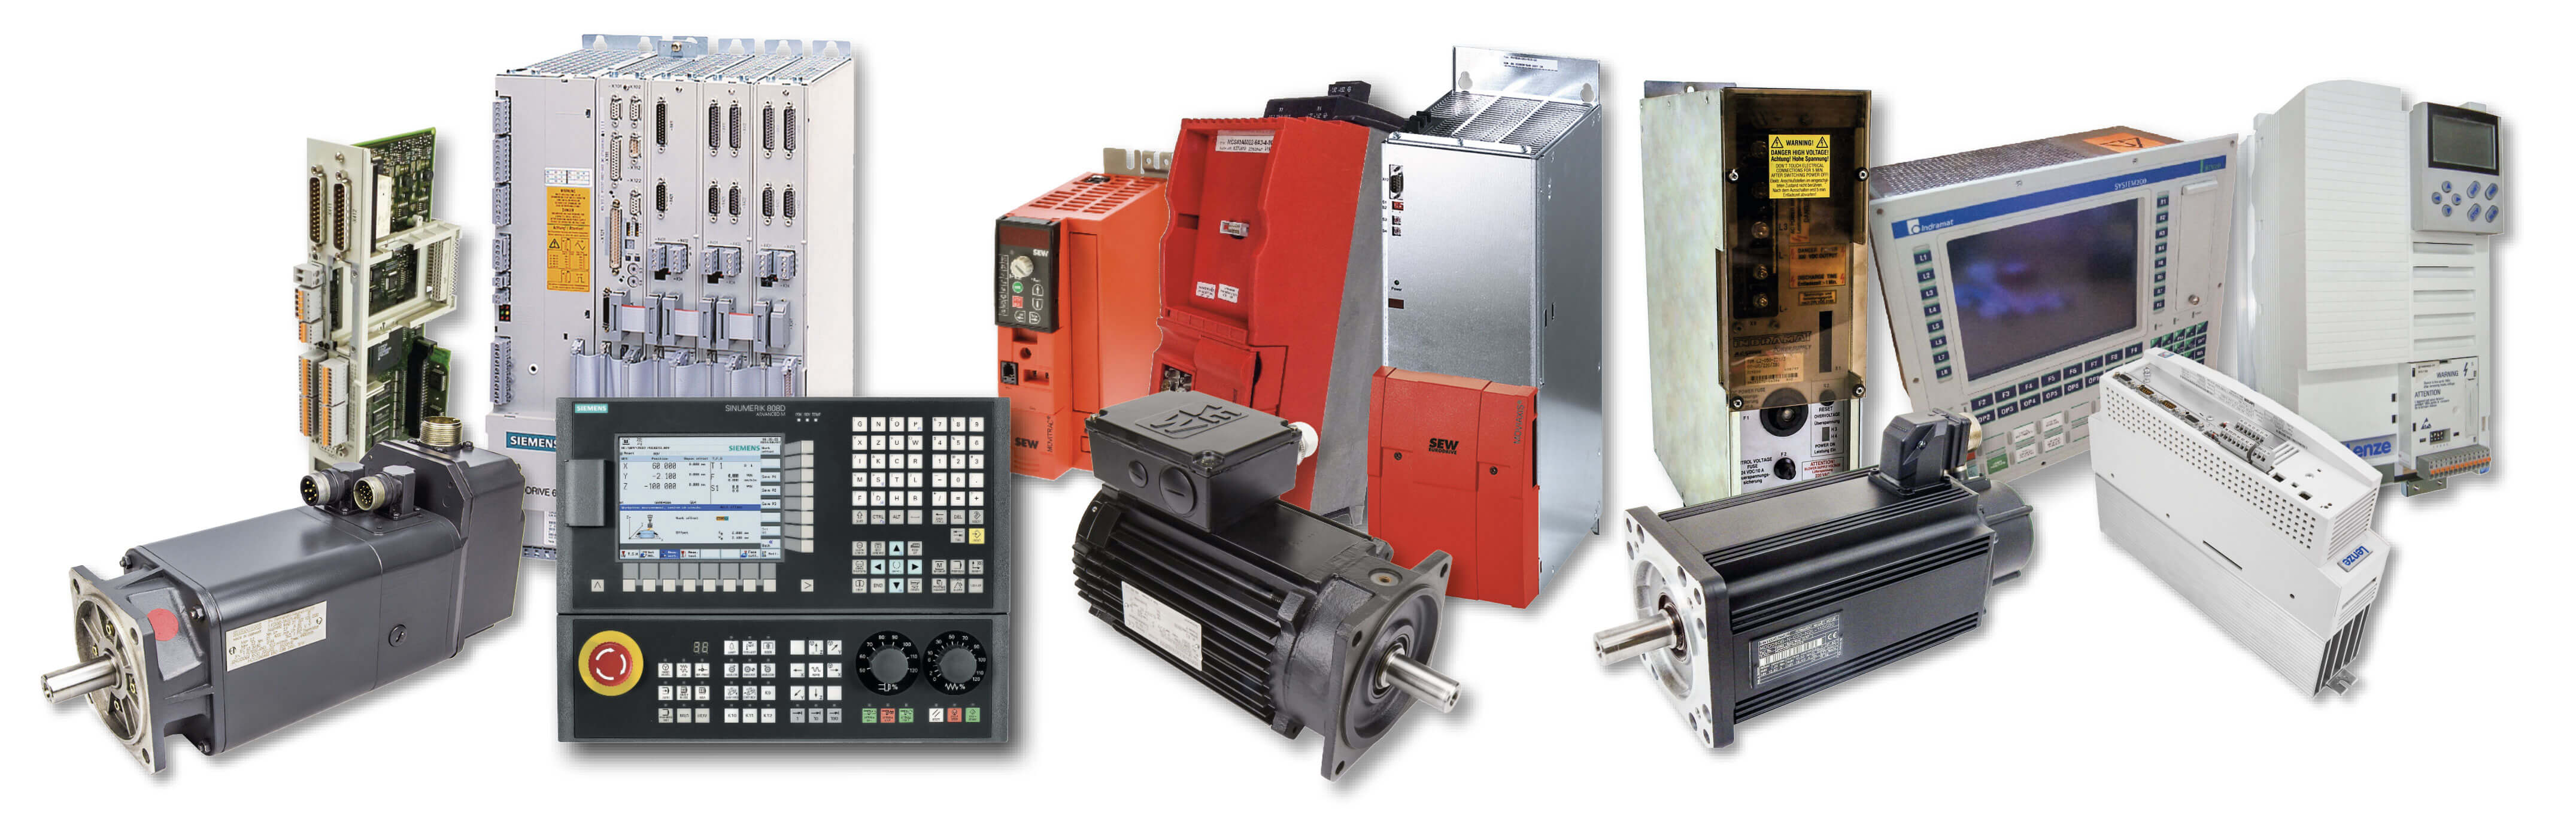 CNC - Nuestra gama de productos y servicios - Colaje - BVS Industrie-Elektronik